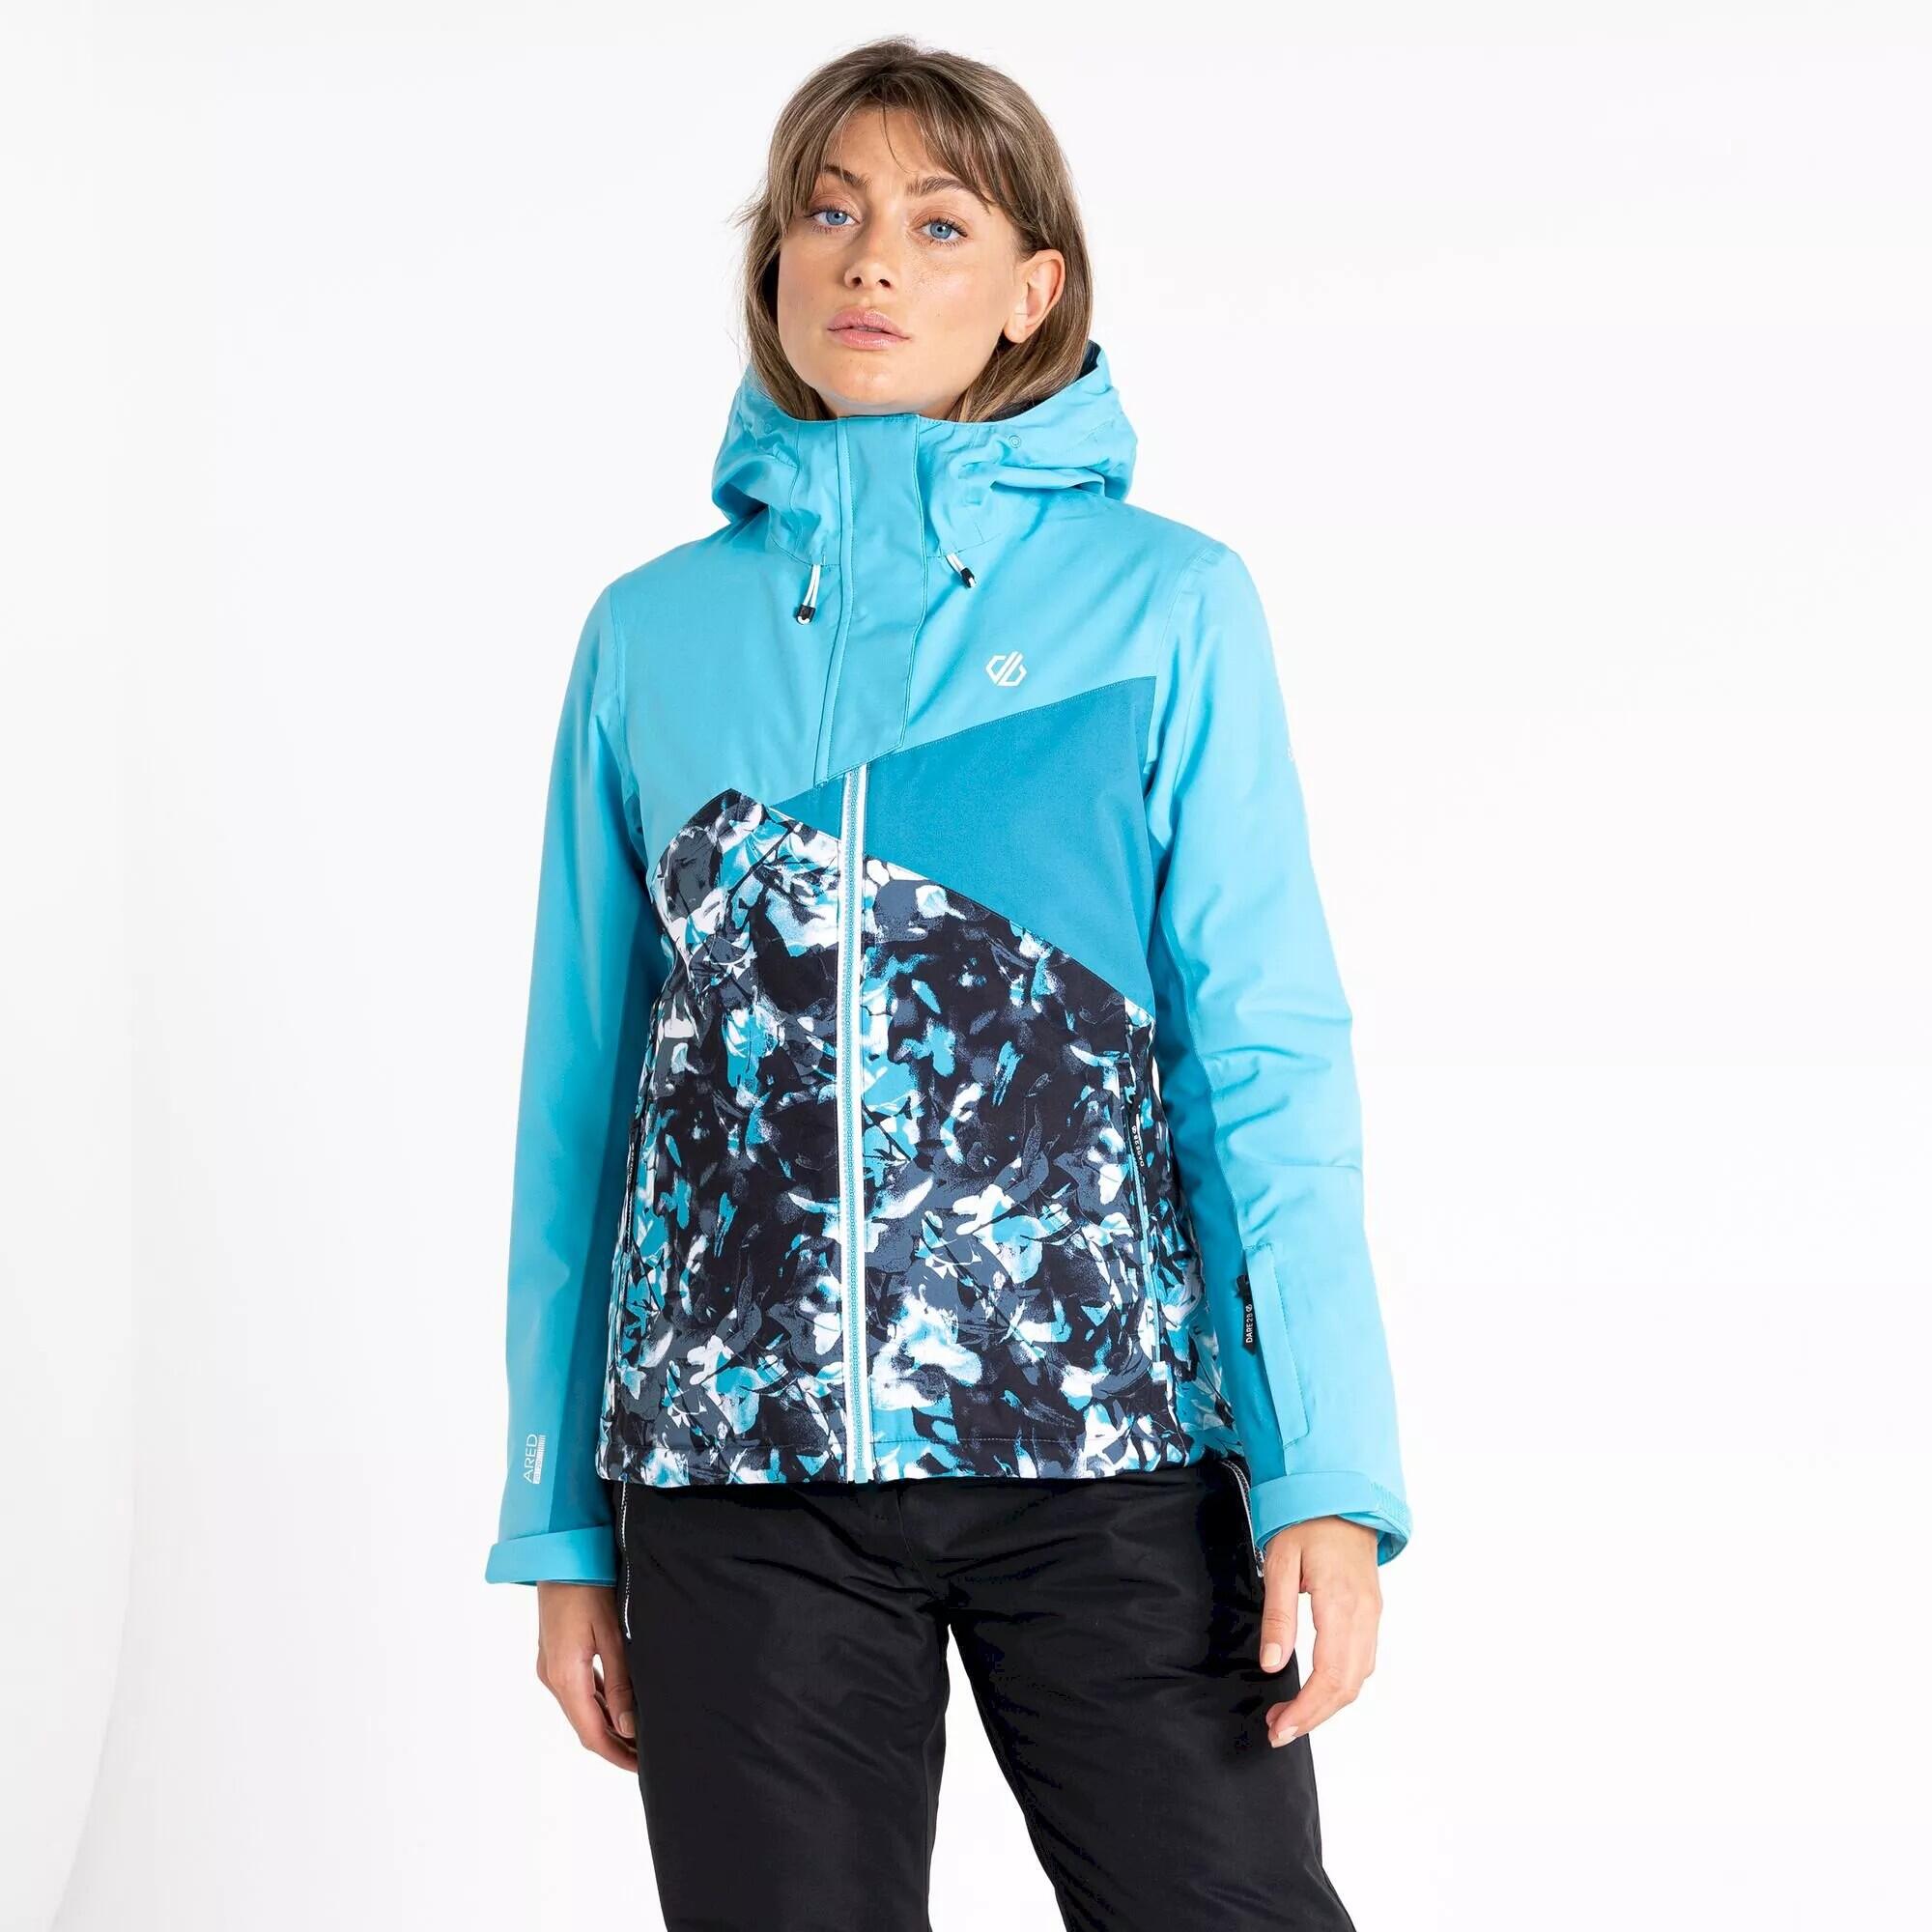 Womens/Ladies Determined Printed Insulated Waterproof Ski Jacket (River 4/5